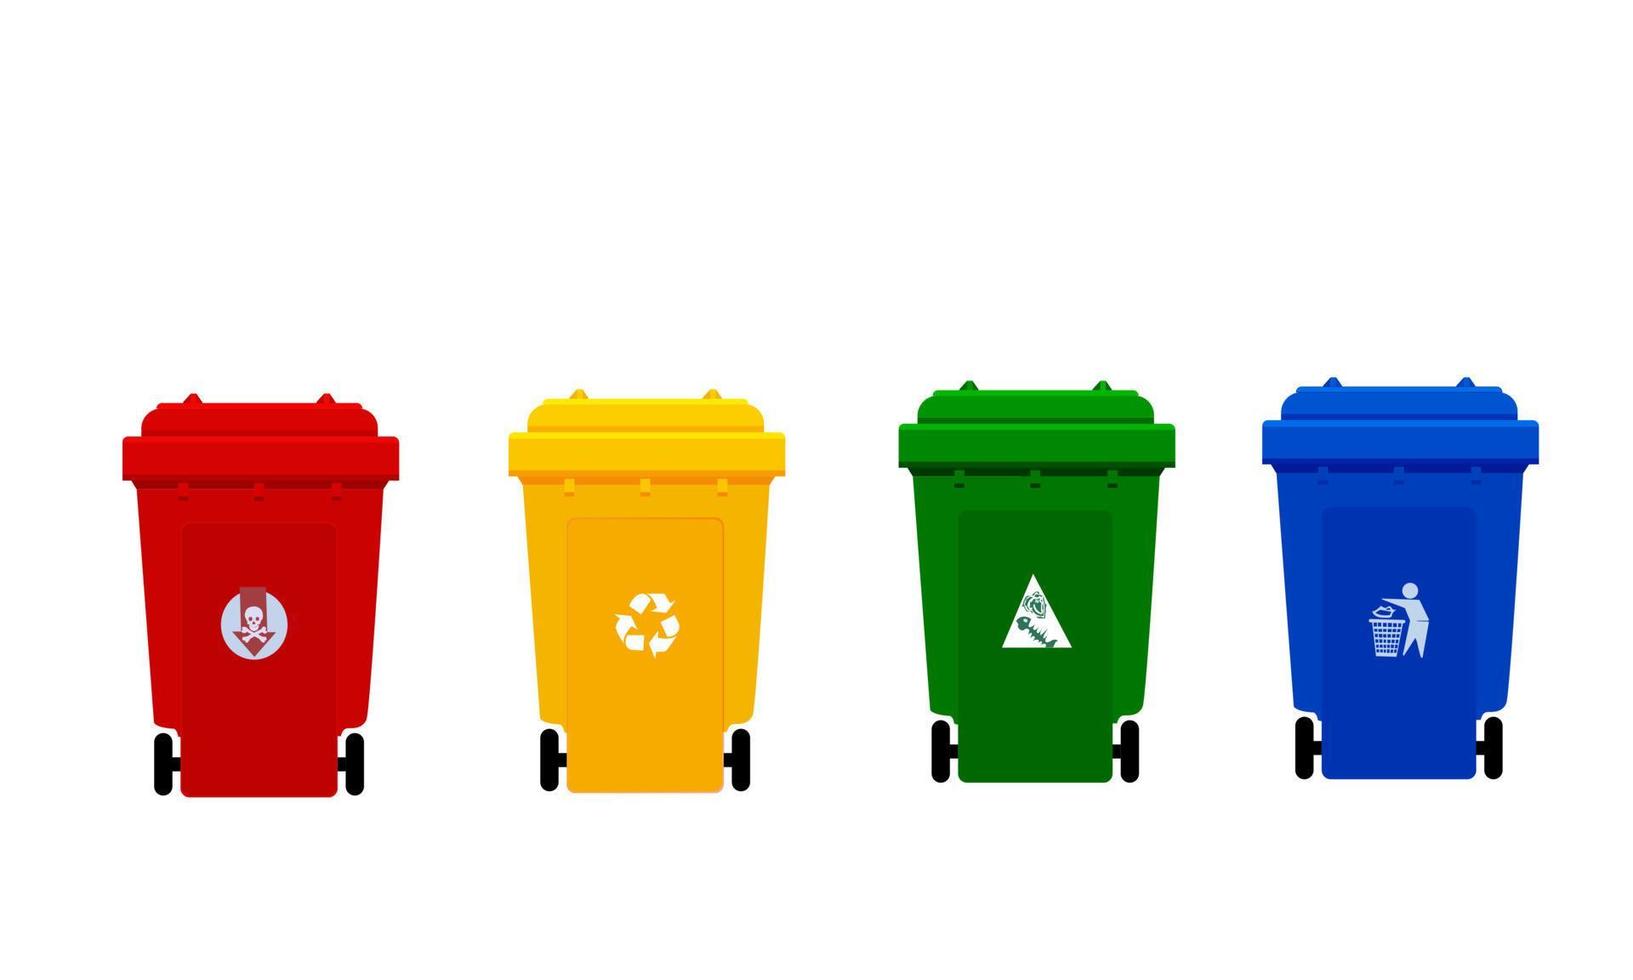 lixeira de plástico, lixeira de quatro cores vermelha, amarela, verde e azul com símbolo, a imagem frontal de todas as quatro lixeiras de plástico, vetor